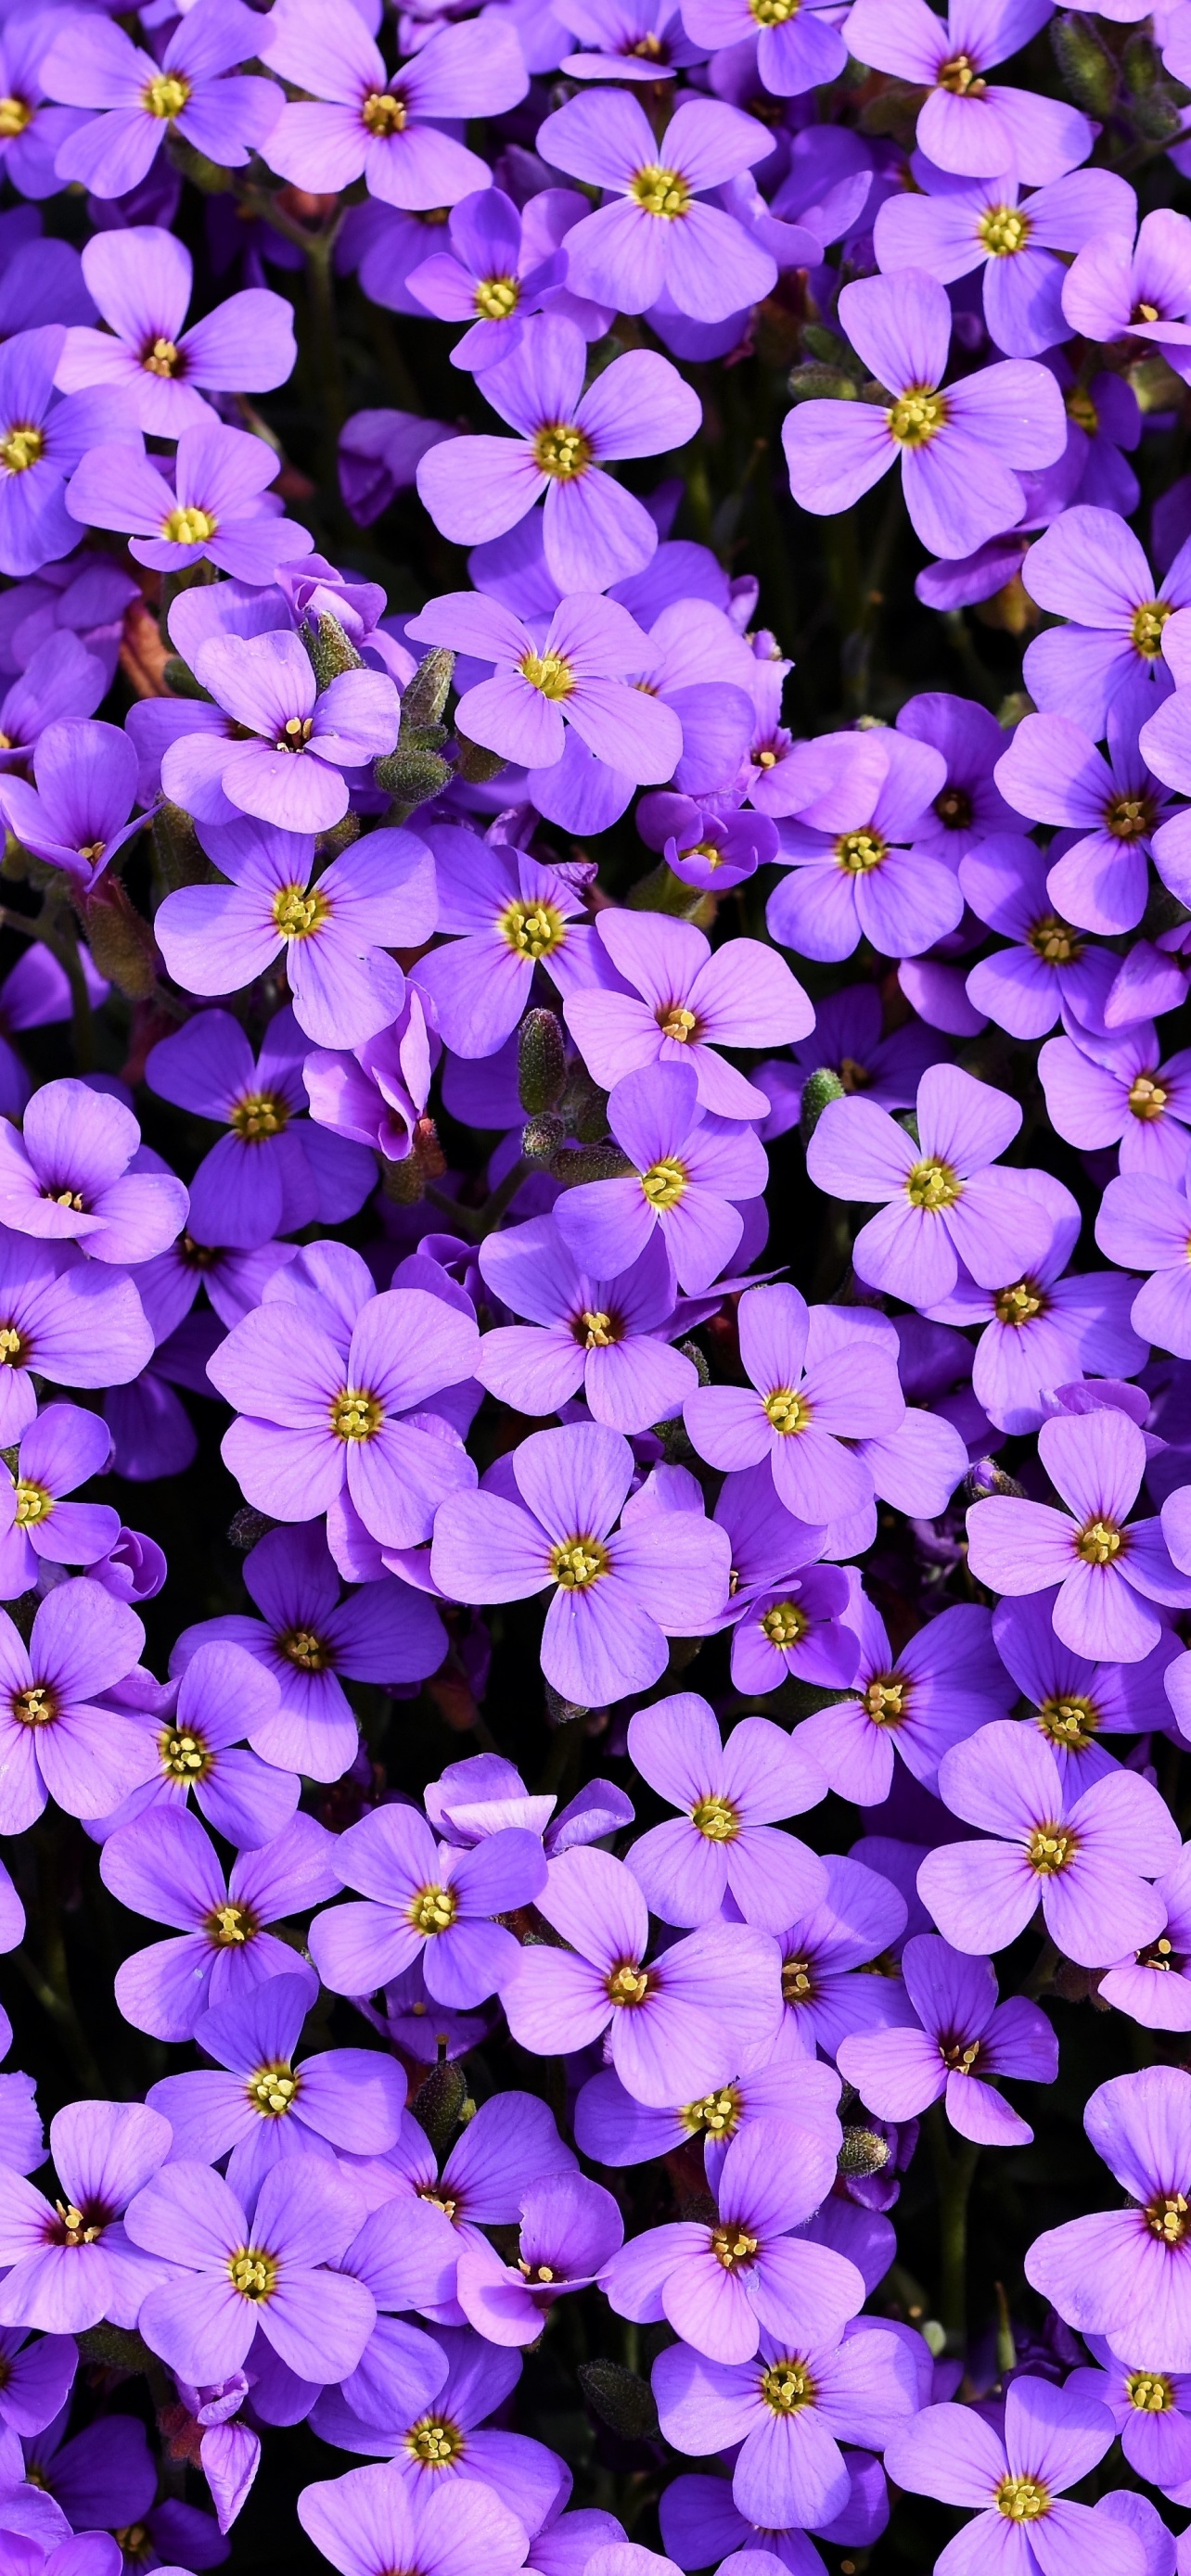 Violet Flowers Field Plants Sunlight Blur Background 4K HD Flowers  Wallpapers  HD Wallpapers  ID 100608